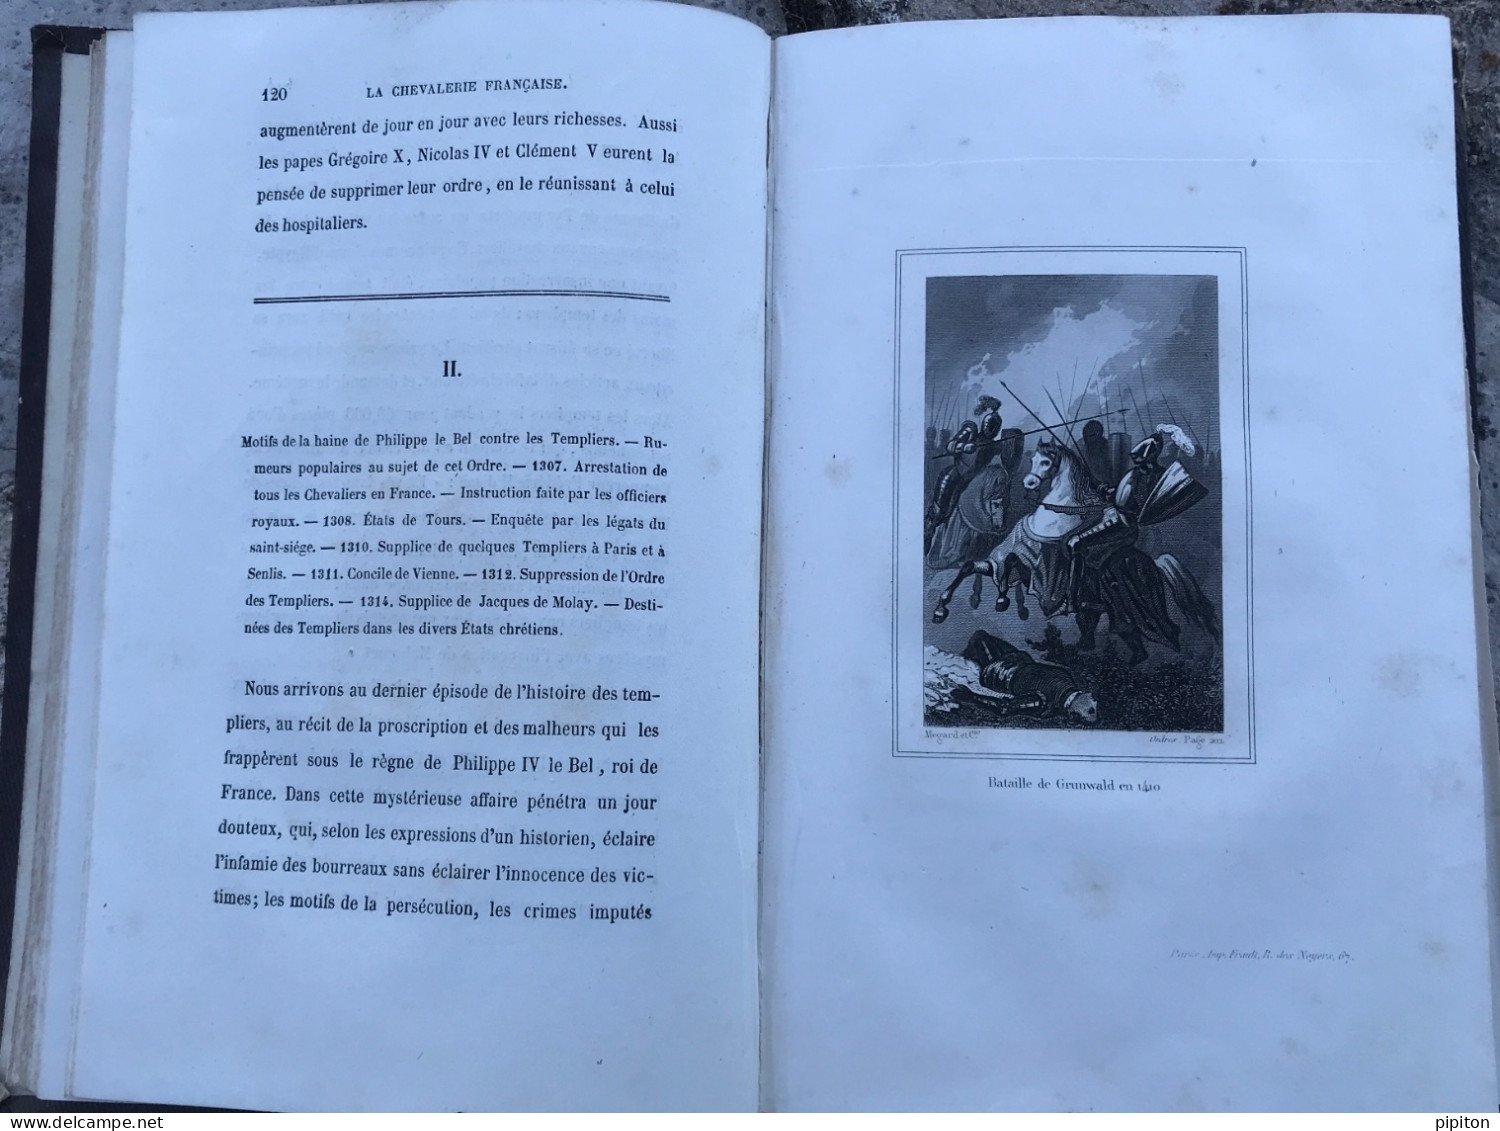 La Chevalerie Française, Ouvrage Sur L'histoire Des Ordres Religieux Et Militaires,1863. - 1801-1900